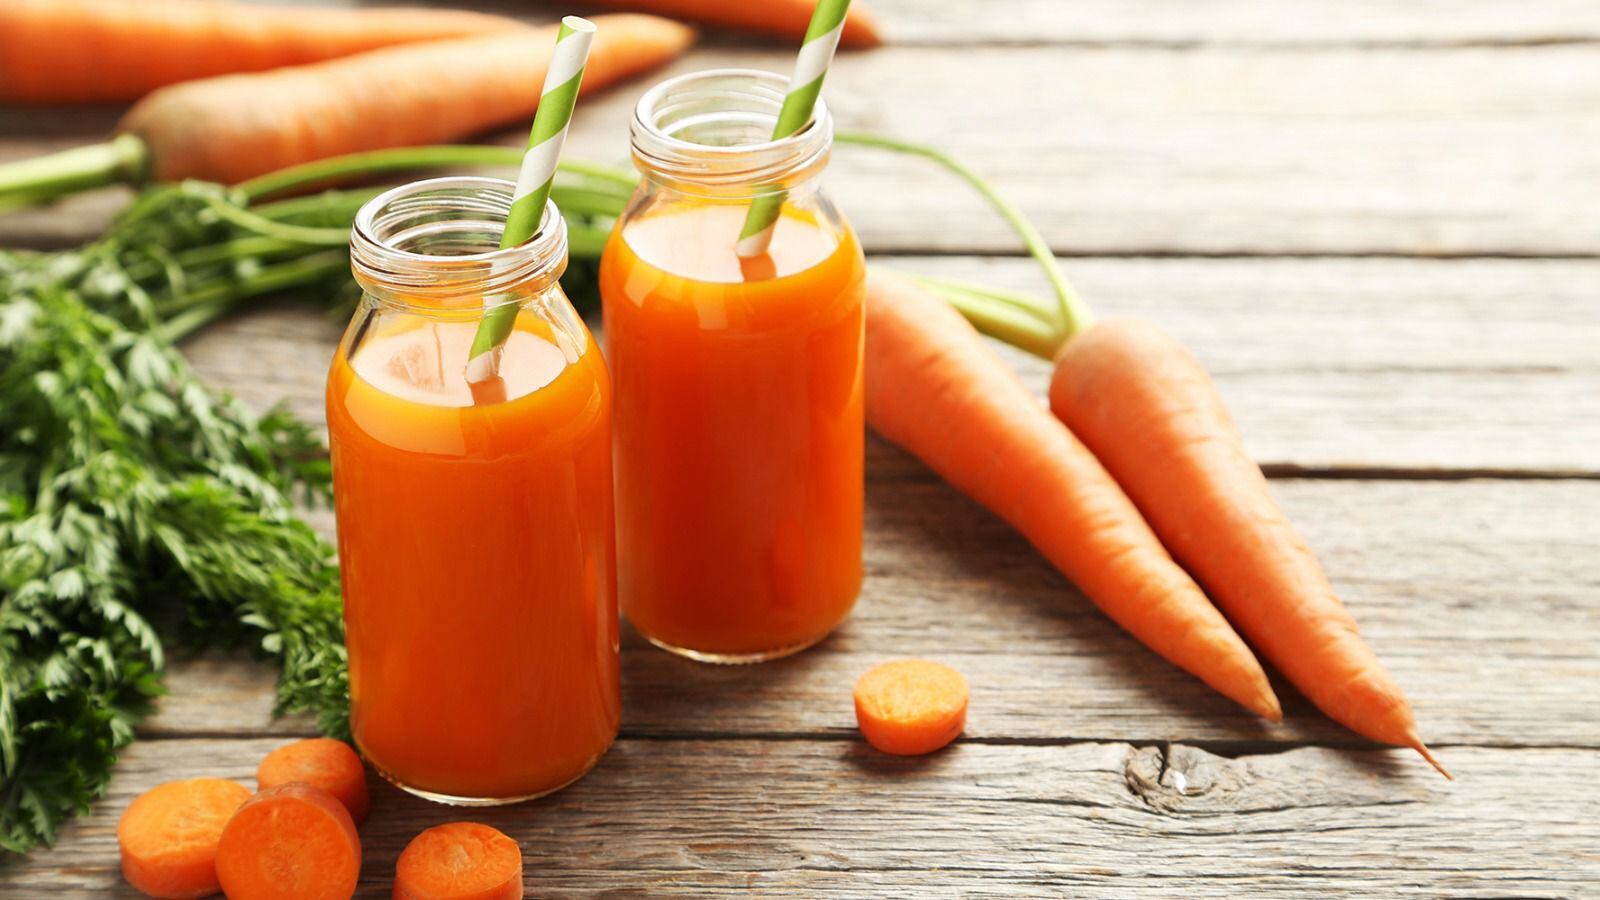 La zanahoria contiene betacaroteno y luteína, relacionadas con una buena vista. (Foto: Shutterstock)